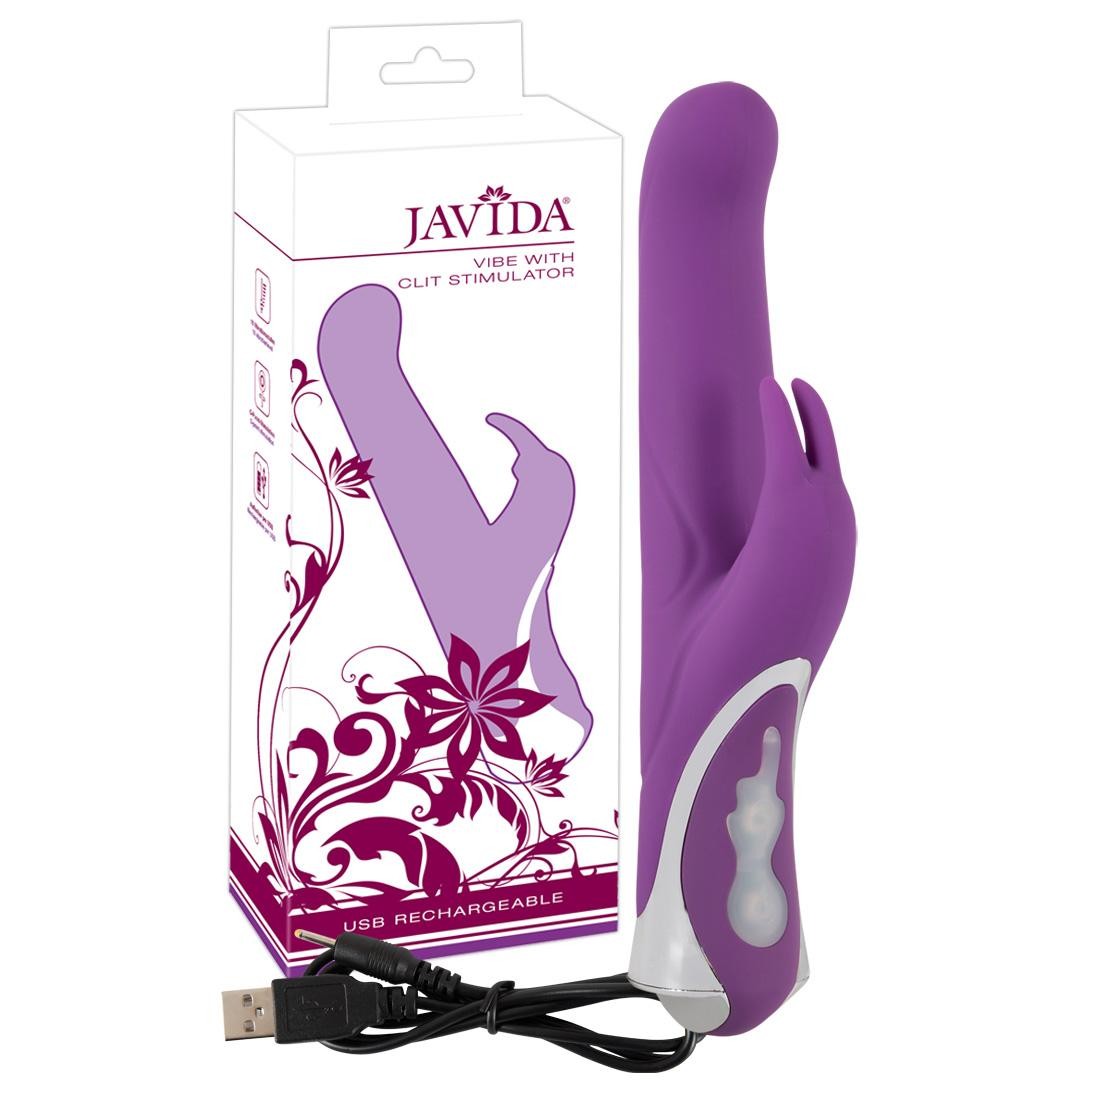  JAVIDA  -  Javida  Vibe  with  clit  stim  USB  -  Vibrator  mit  Klitorisreizer 